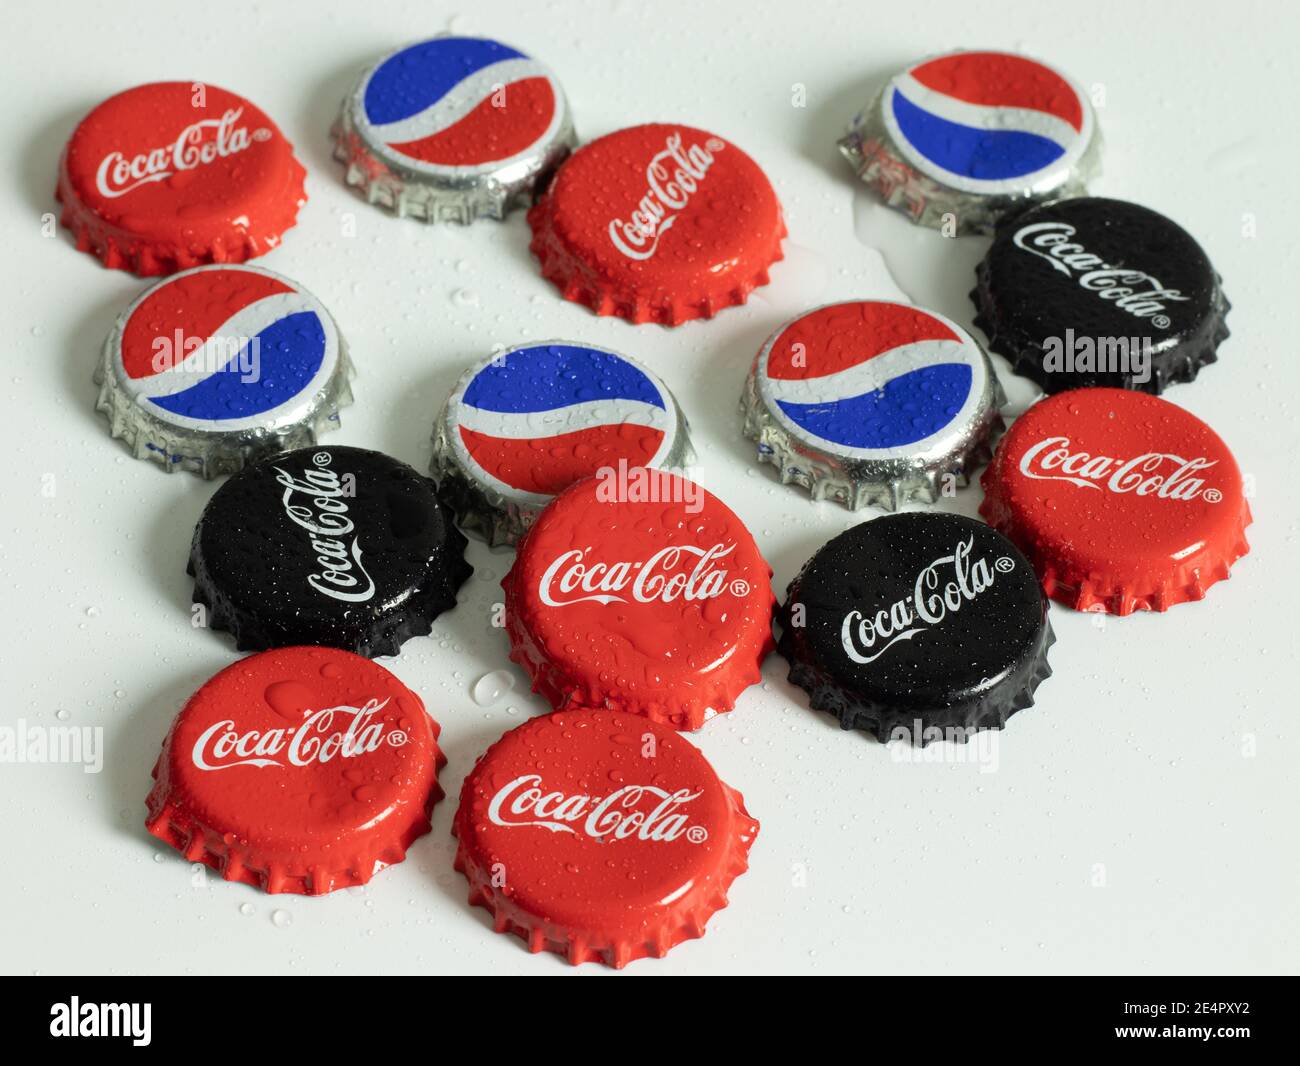 Nueva York, EE.UU. - 1 de enero de 2021: Logotipo de la Marca Coca-Cola y Pepsi en la tapa de la botella, editorial ilustrativa Foto de stock